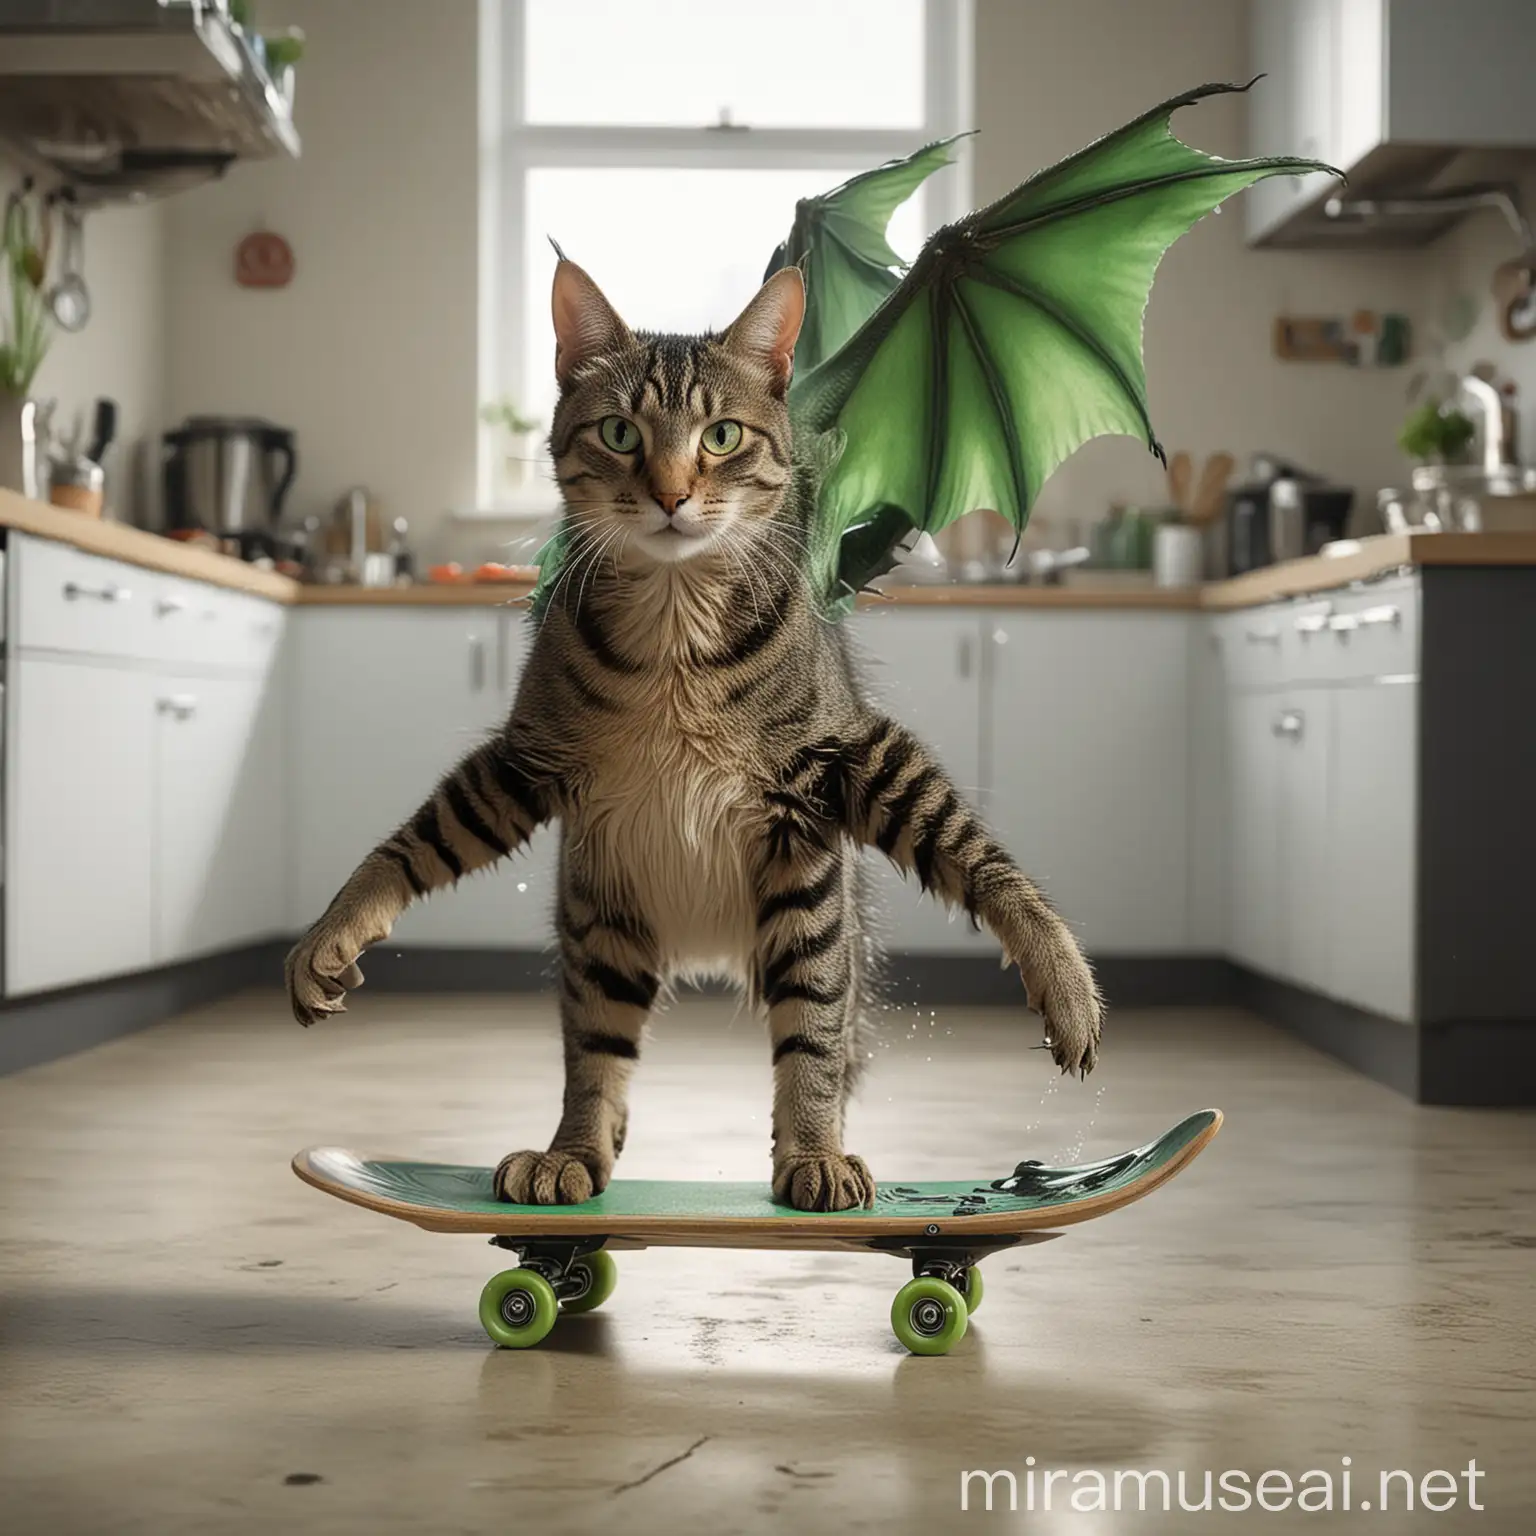 imagen de un gato con cola de dragón verde, que vuela y viaja en una pecera sobre una patineta en una cocina futurista